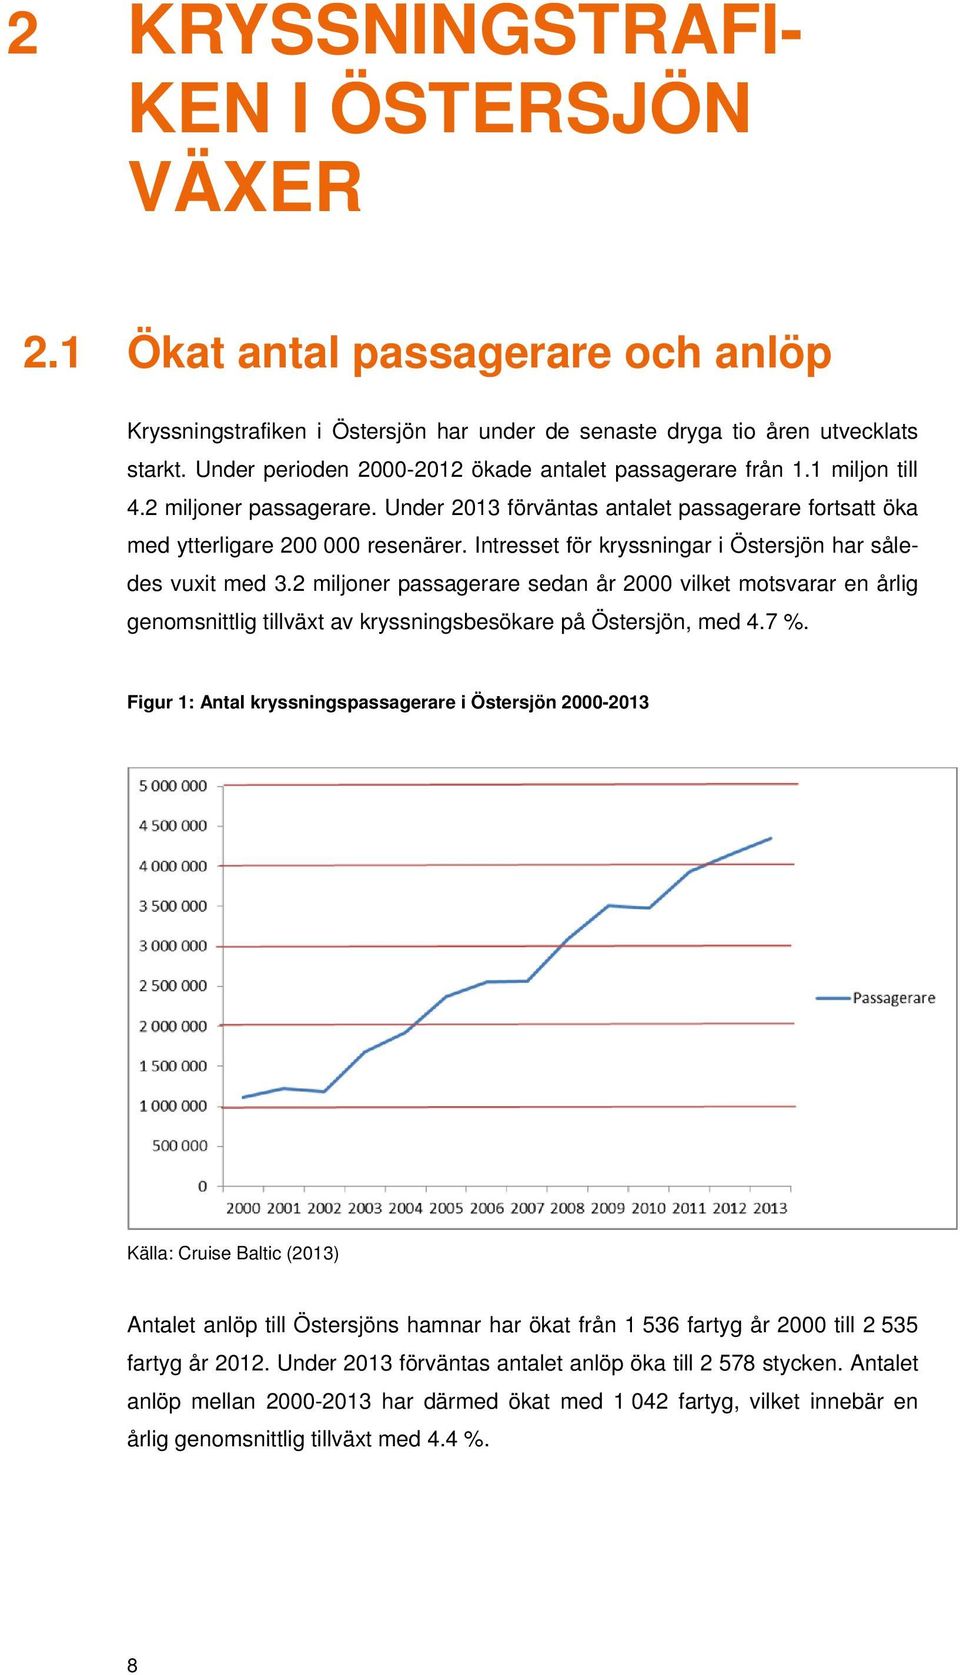 Intresset för kryssningar i Östersjön har således vuxit med 3.2 miljoner passagerare sedan år 2000 vilket motsvarar en årlig genomsnittlig tillväxt av kryssningsbesökare på Östersjön, med 4.7 %.